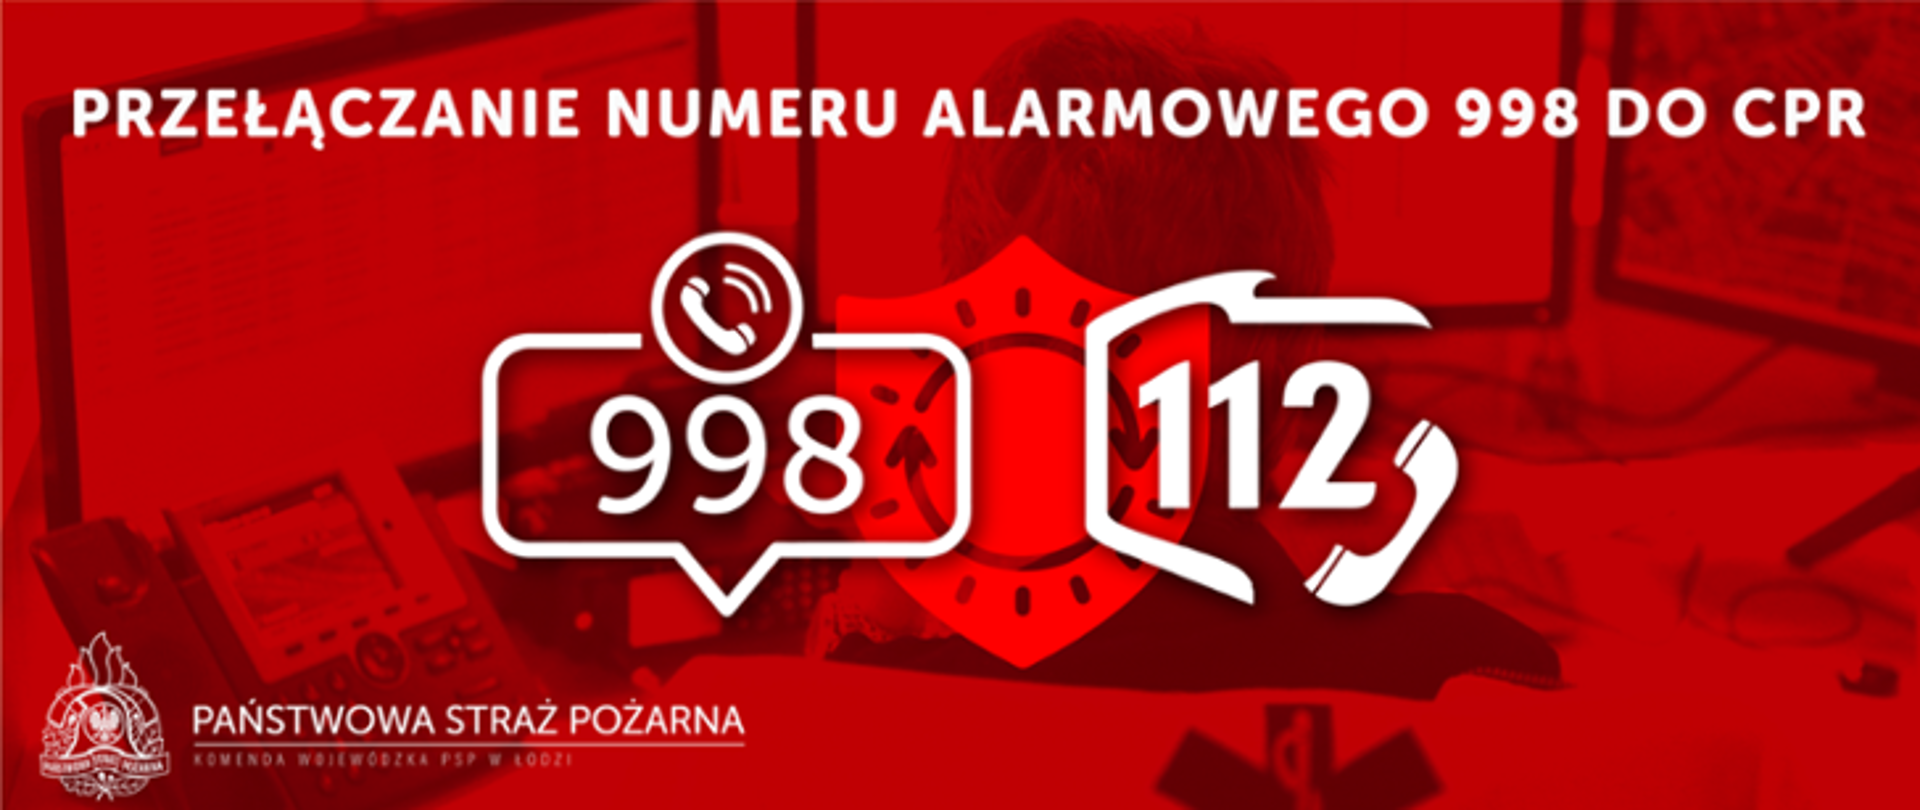 Ilustracja przedstawia informacje dotyczącą przełączenia nr alarmowego 998 na 112